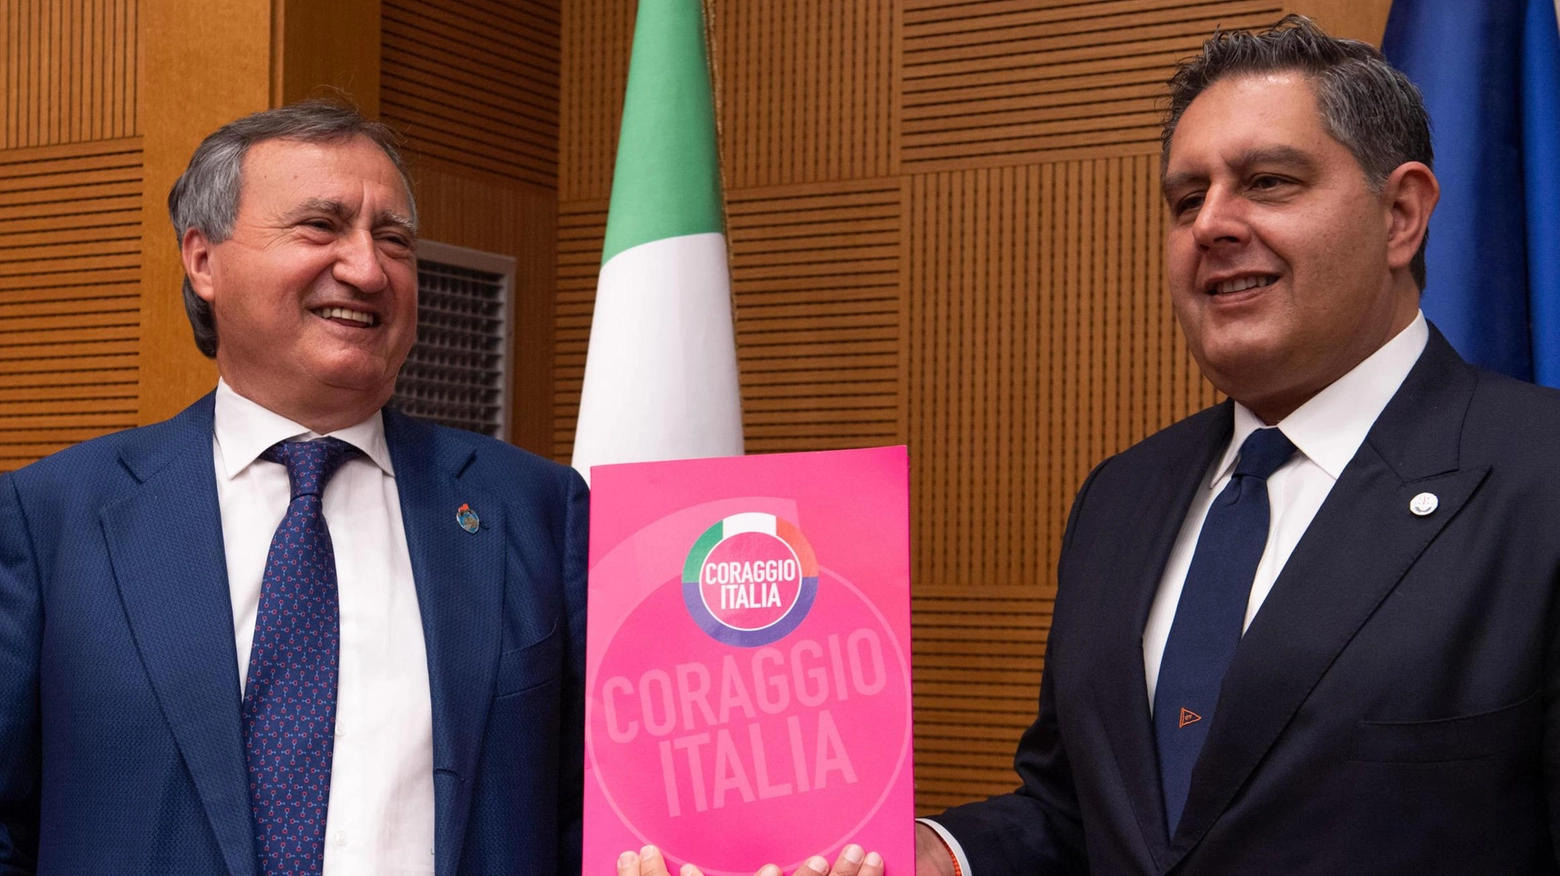 Luigi Brugnaro e Giovanni Toti il 27 maggio presentavano il simbolo di Coraggio Italia